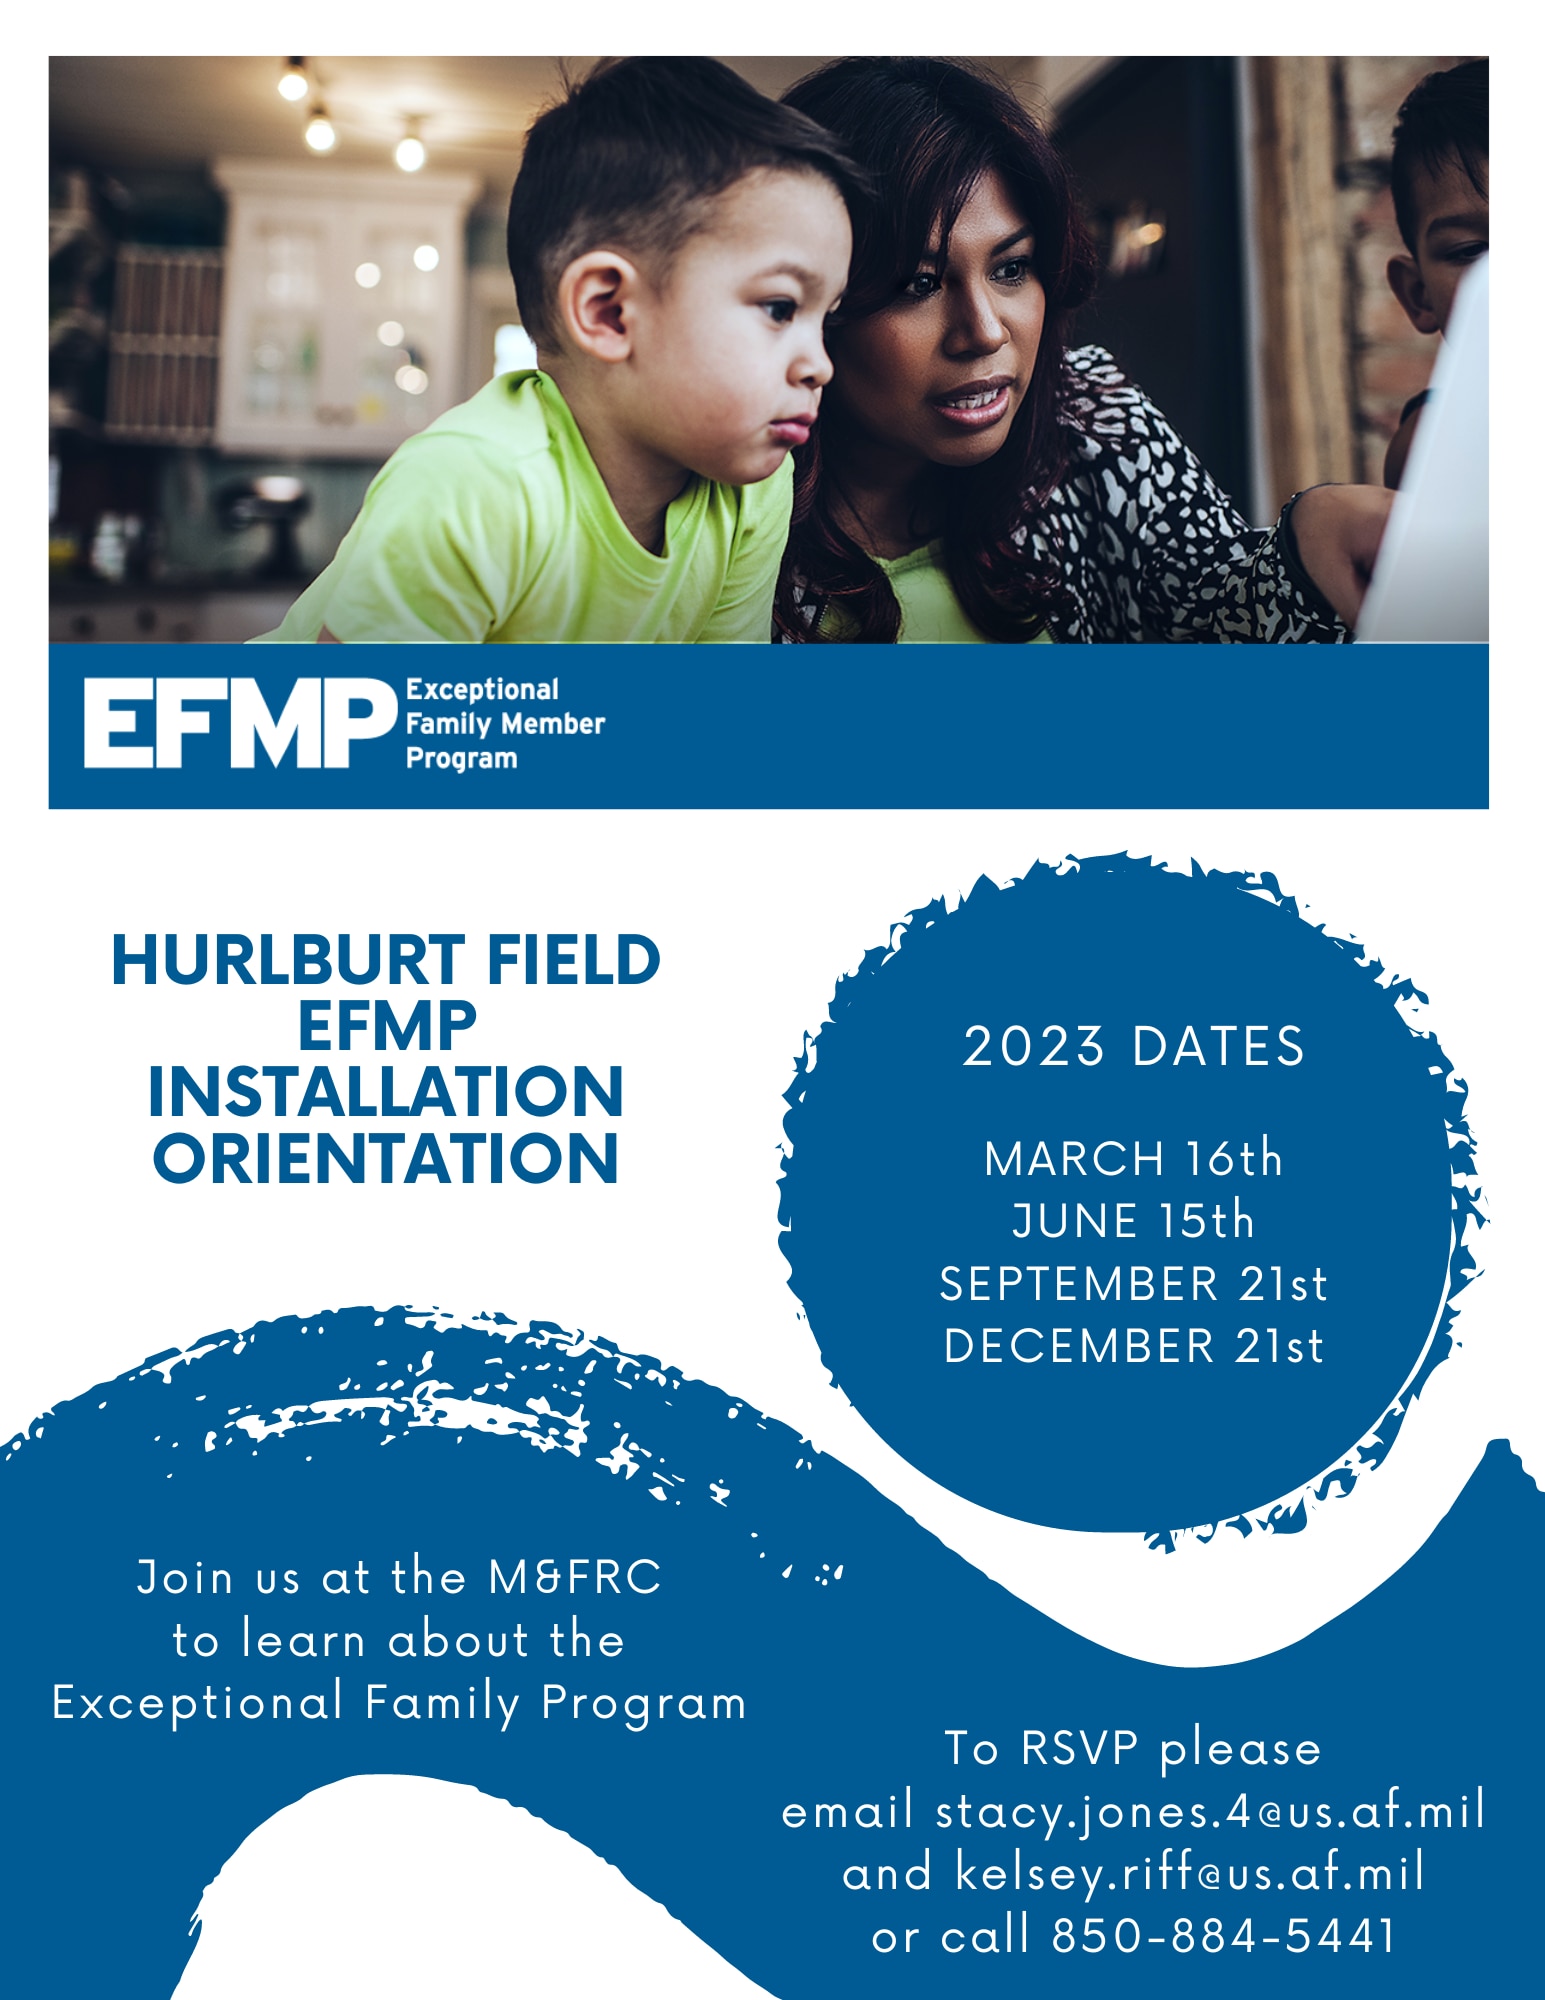 Hurlburt Field EFMP Installation Orientation Flyer, 2023 Dates March 16th, June 15th, September 21st, December 21st, at the M&FRC. RSVP email stacy.jones.4@us.af.mil and kelsey.riff@us.af.mil or call 850-884-5441.